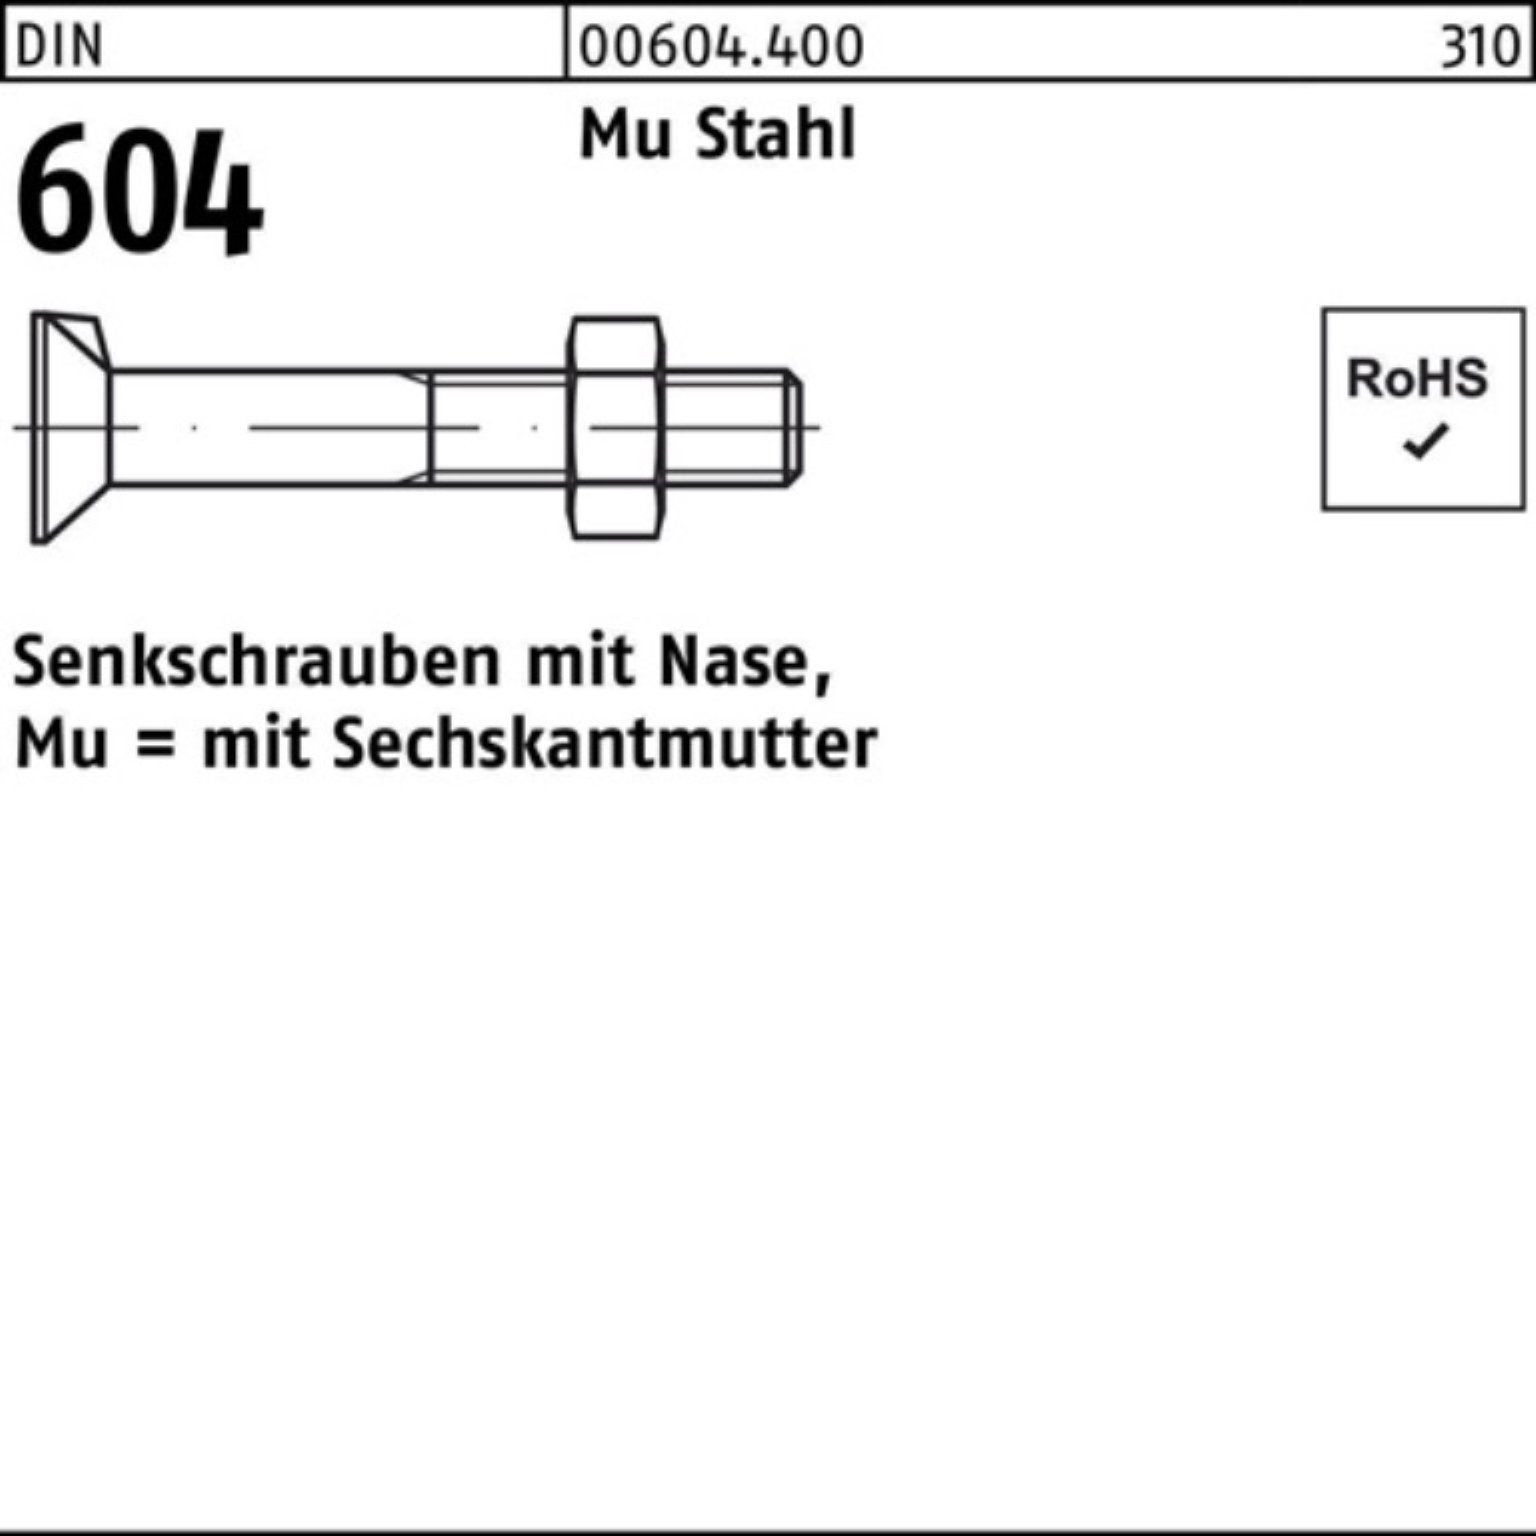 604 DIN 4.6 M16x 5 Pack 40 Stahl Senkschraube Reyher Nase/6-ktmutter Mu 100er Senkschraube